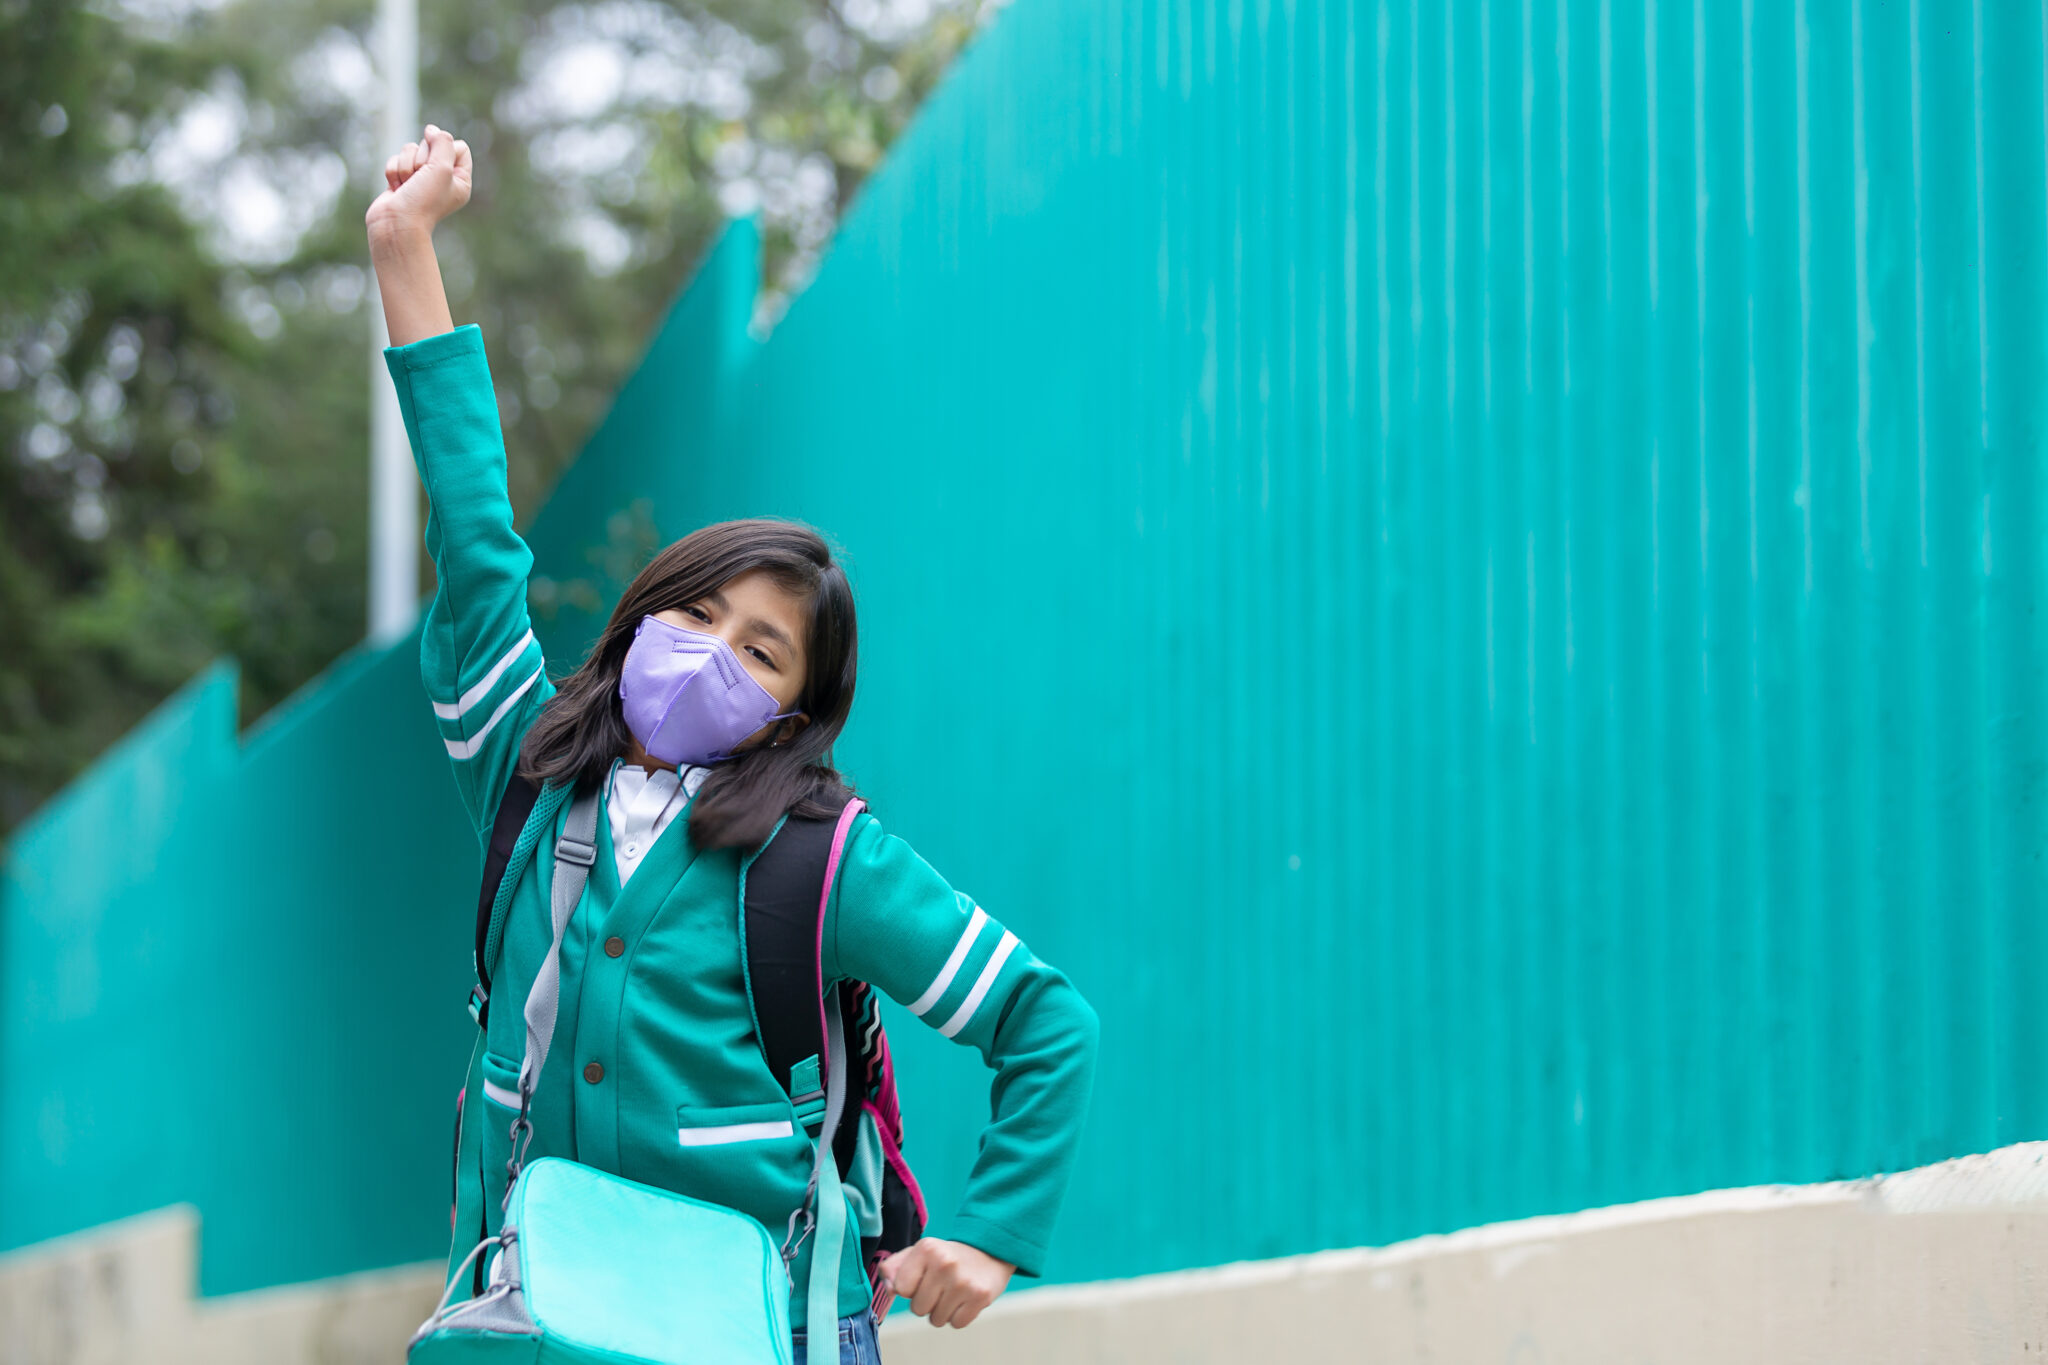 Супер счастливая мексиканская девочка взволнована возвращением в школу в защитной маске после блокировки коронавируса